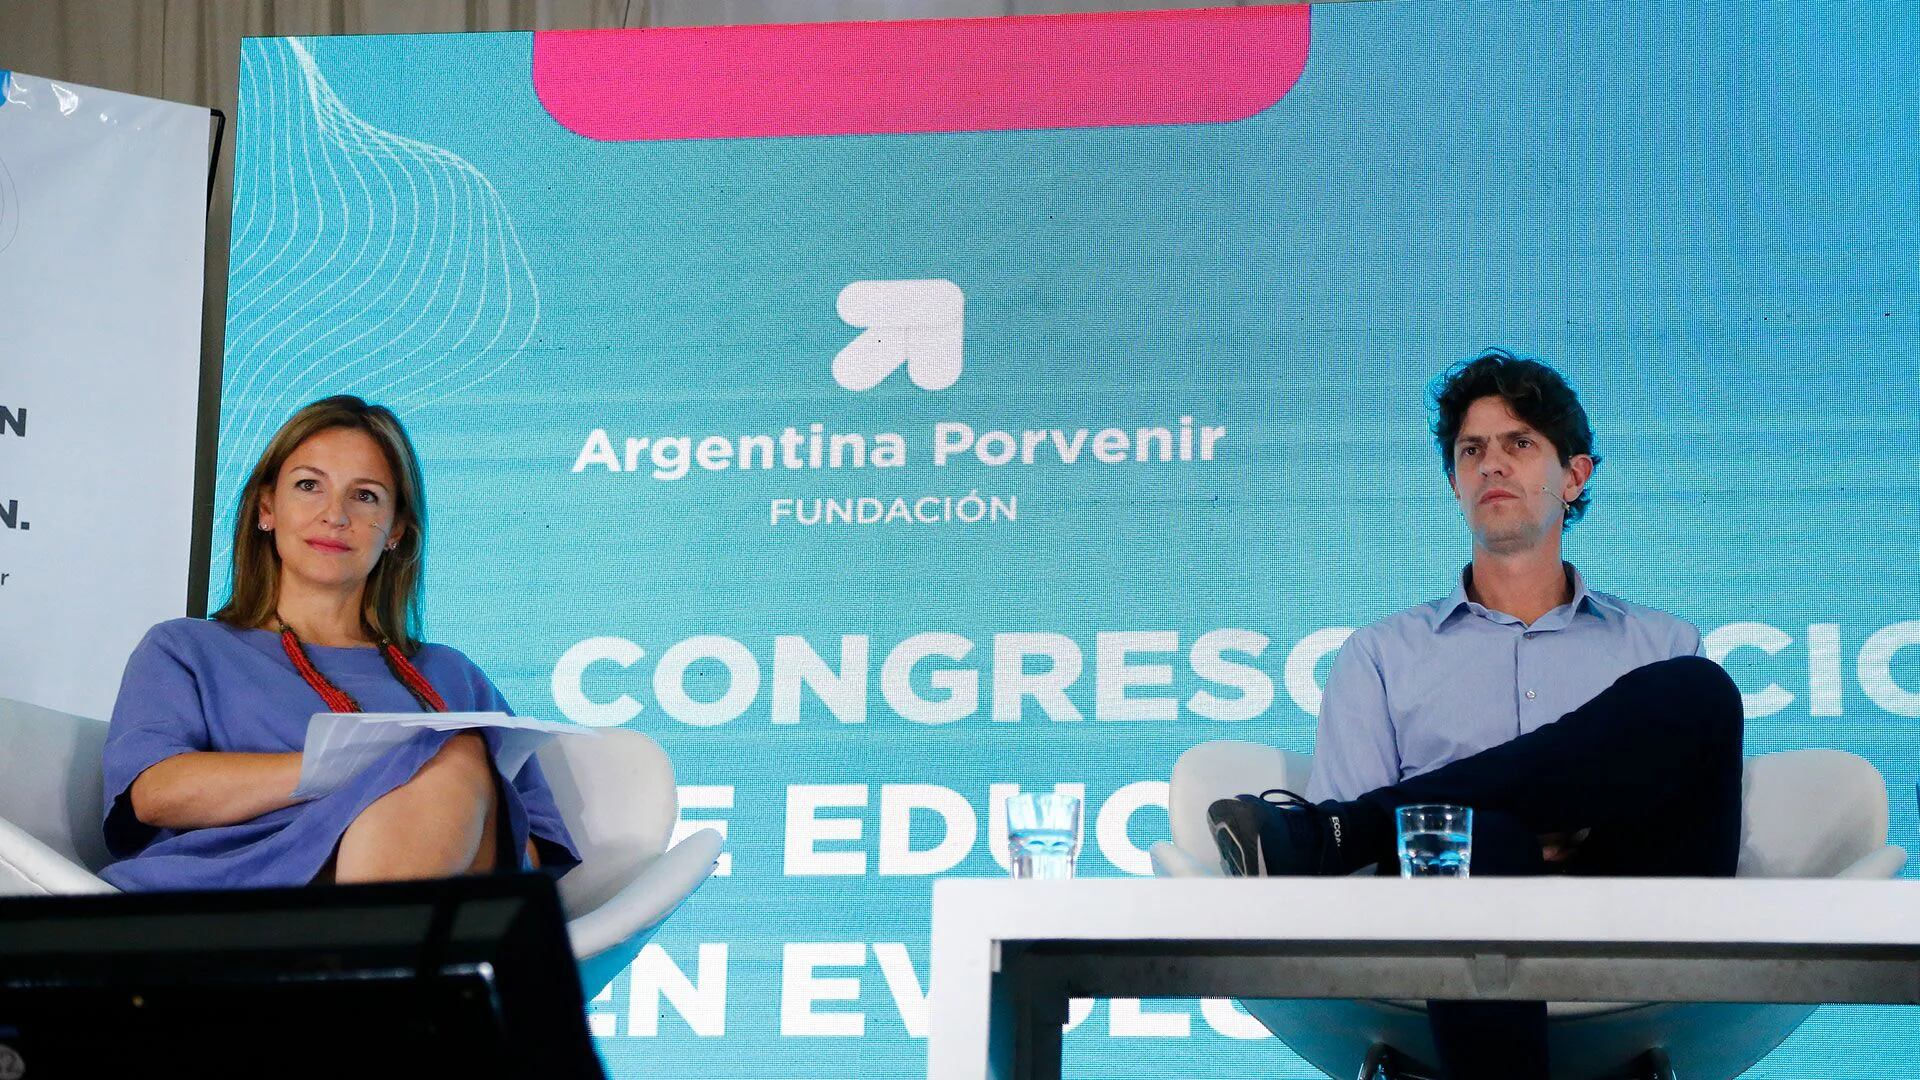 Soledad Acuña le respondió a Patricia Bullrich: “Es una visión populista pensar que un dirigente puede definir una elección”